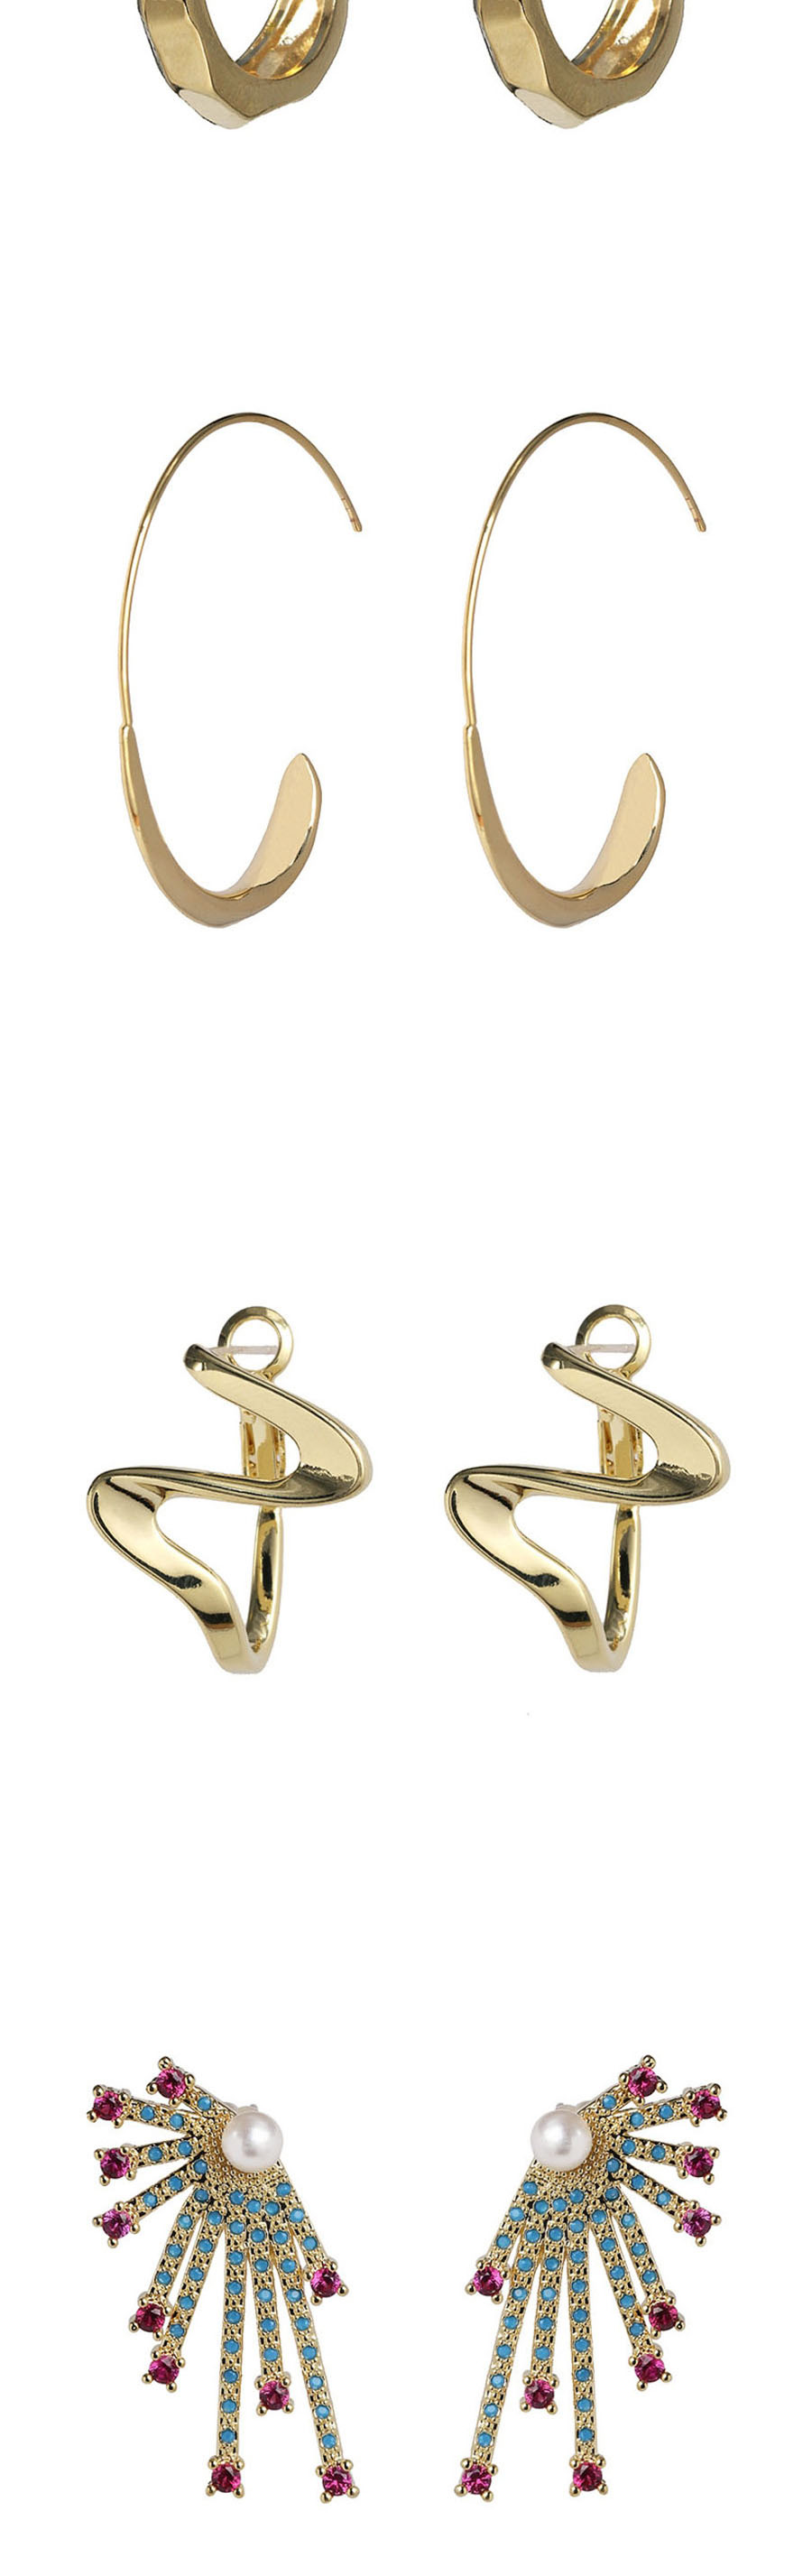 Fashion Golden Alloy Geometric Earrings,Stud Earrings